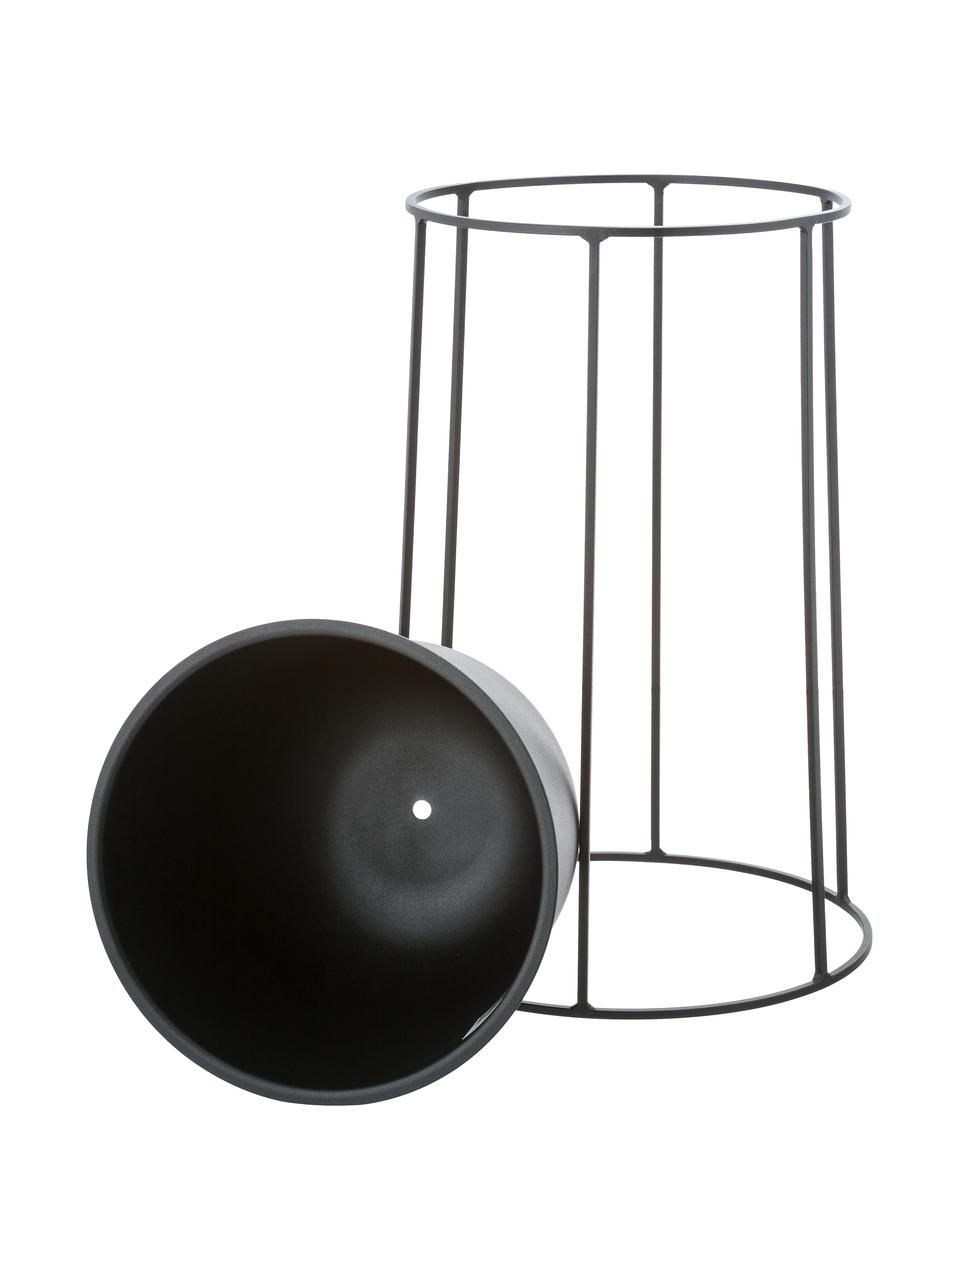 Grosser Pflanztopf Wire Pot aus Stahl, Stahl, pulverbeschichtet, Schwarz, Ø 23 x H 17 cm